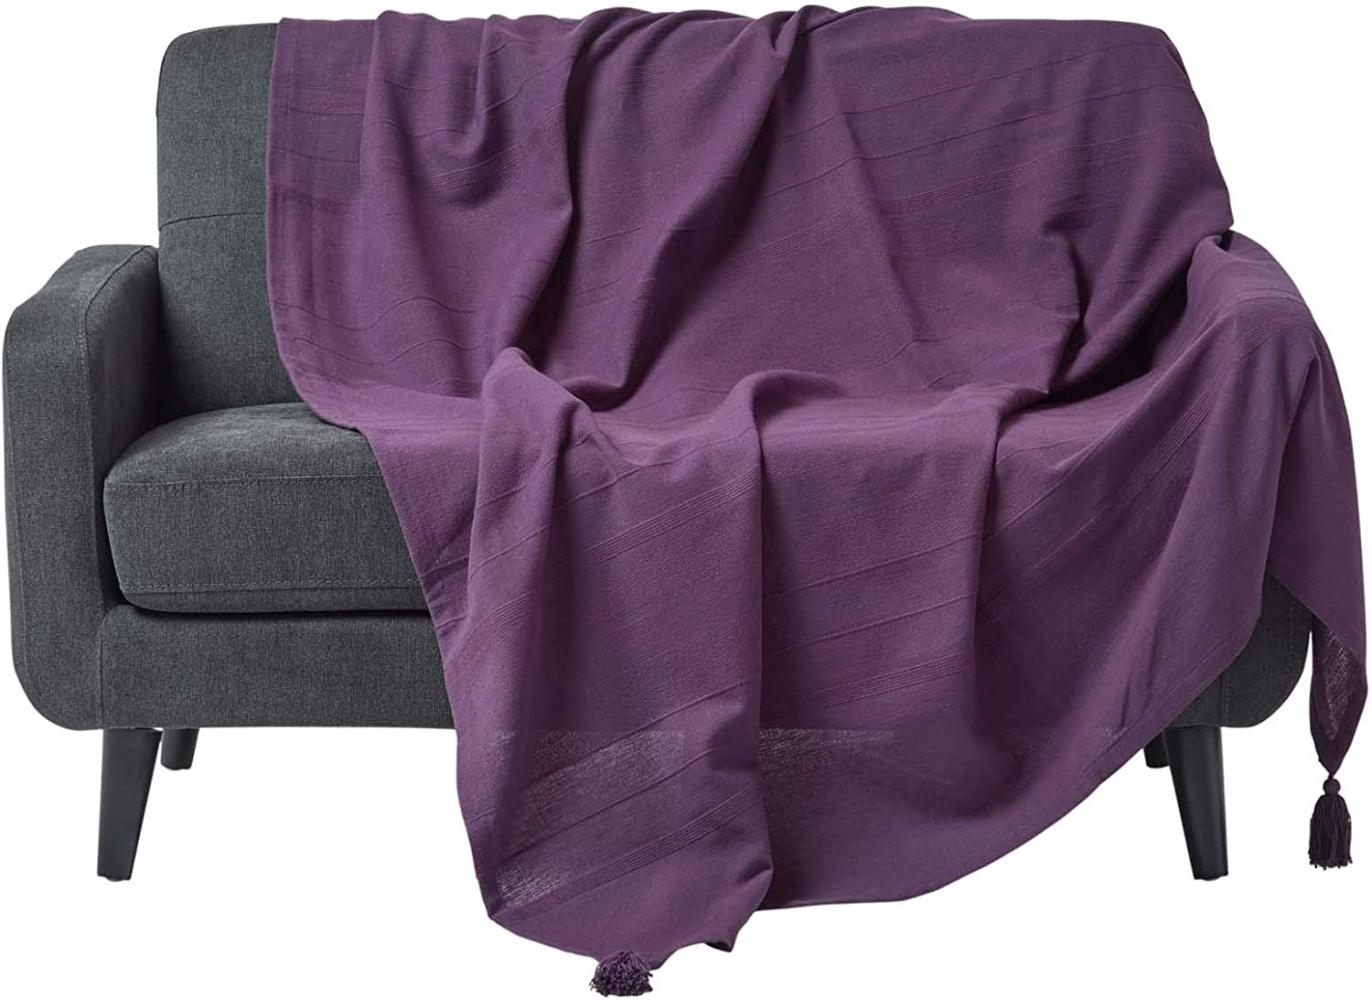 Homescapes extra große Tagesdecke Rajput, lila, Wohndecke aus 100% Baumwolle, 255 x 360 cm, Sofaüberwurf/Couchüberwurf in RIPP-Optik Bild 1